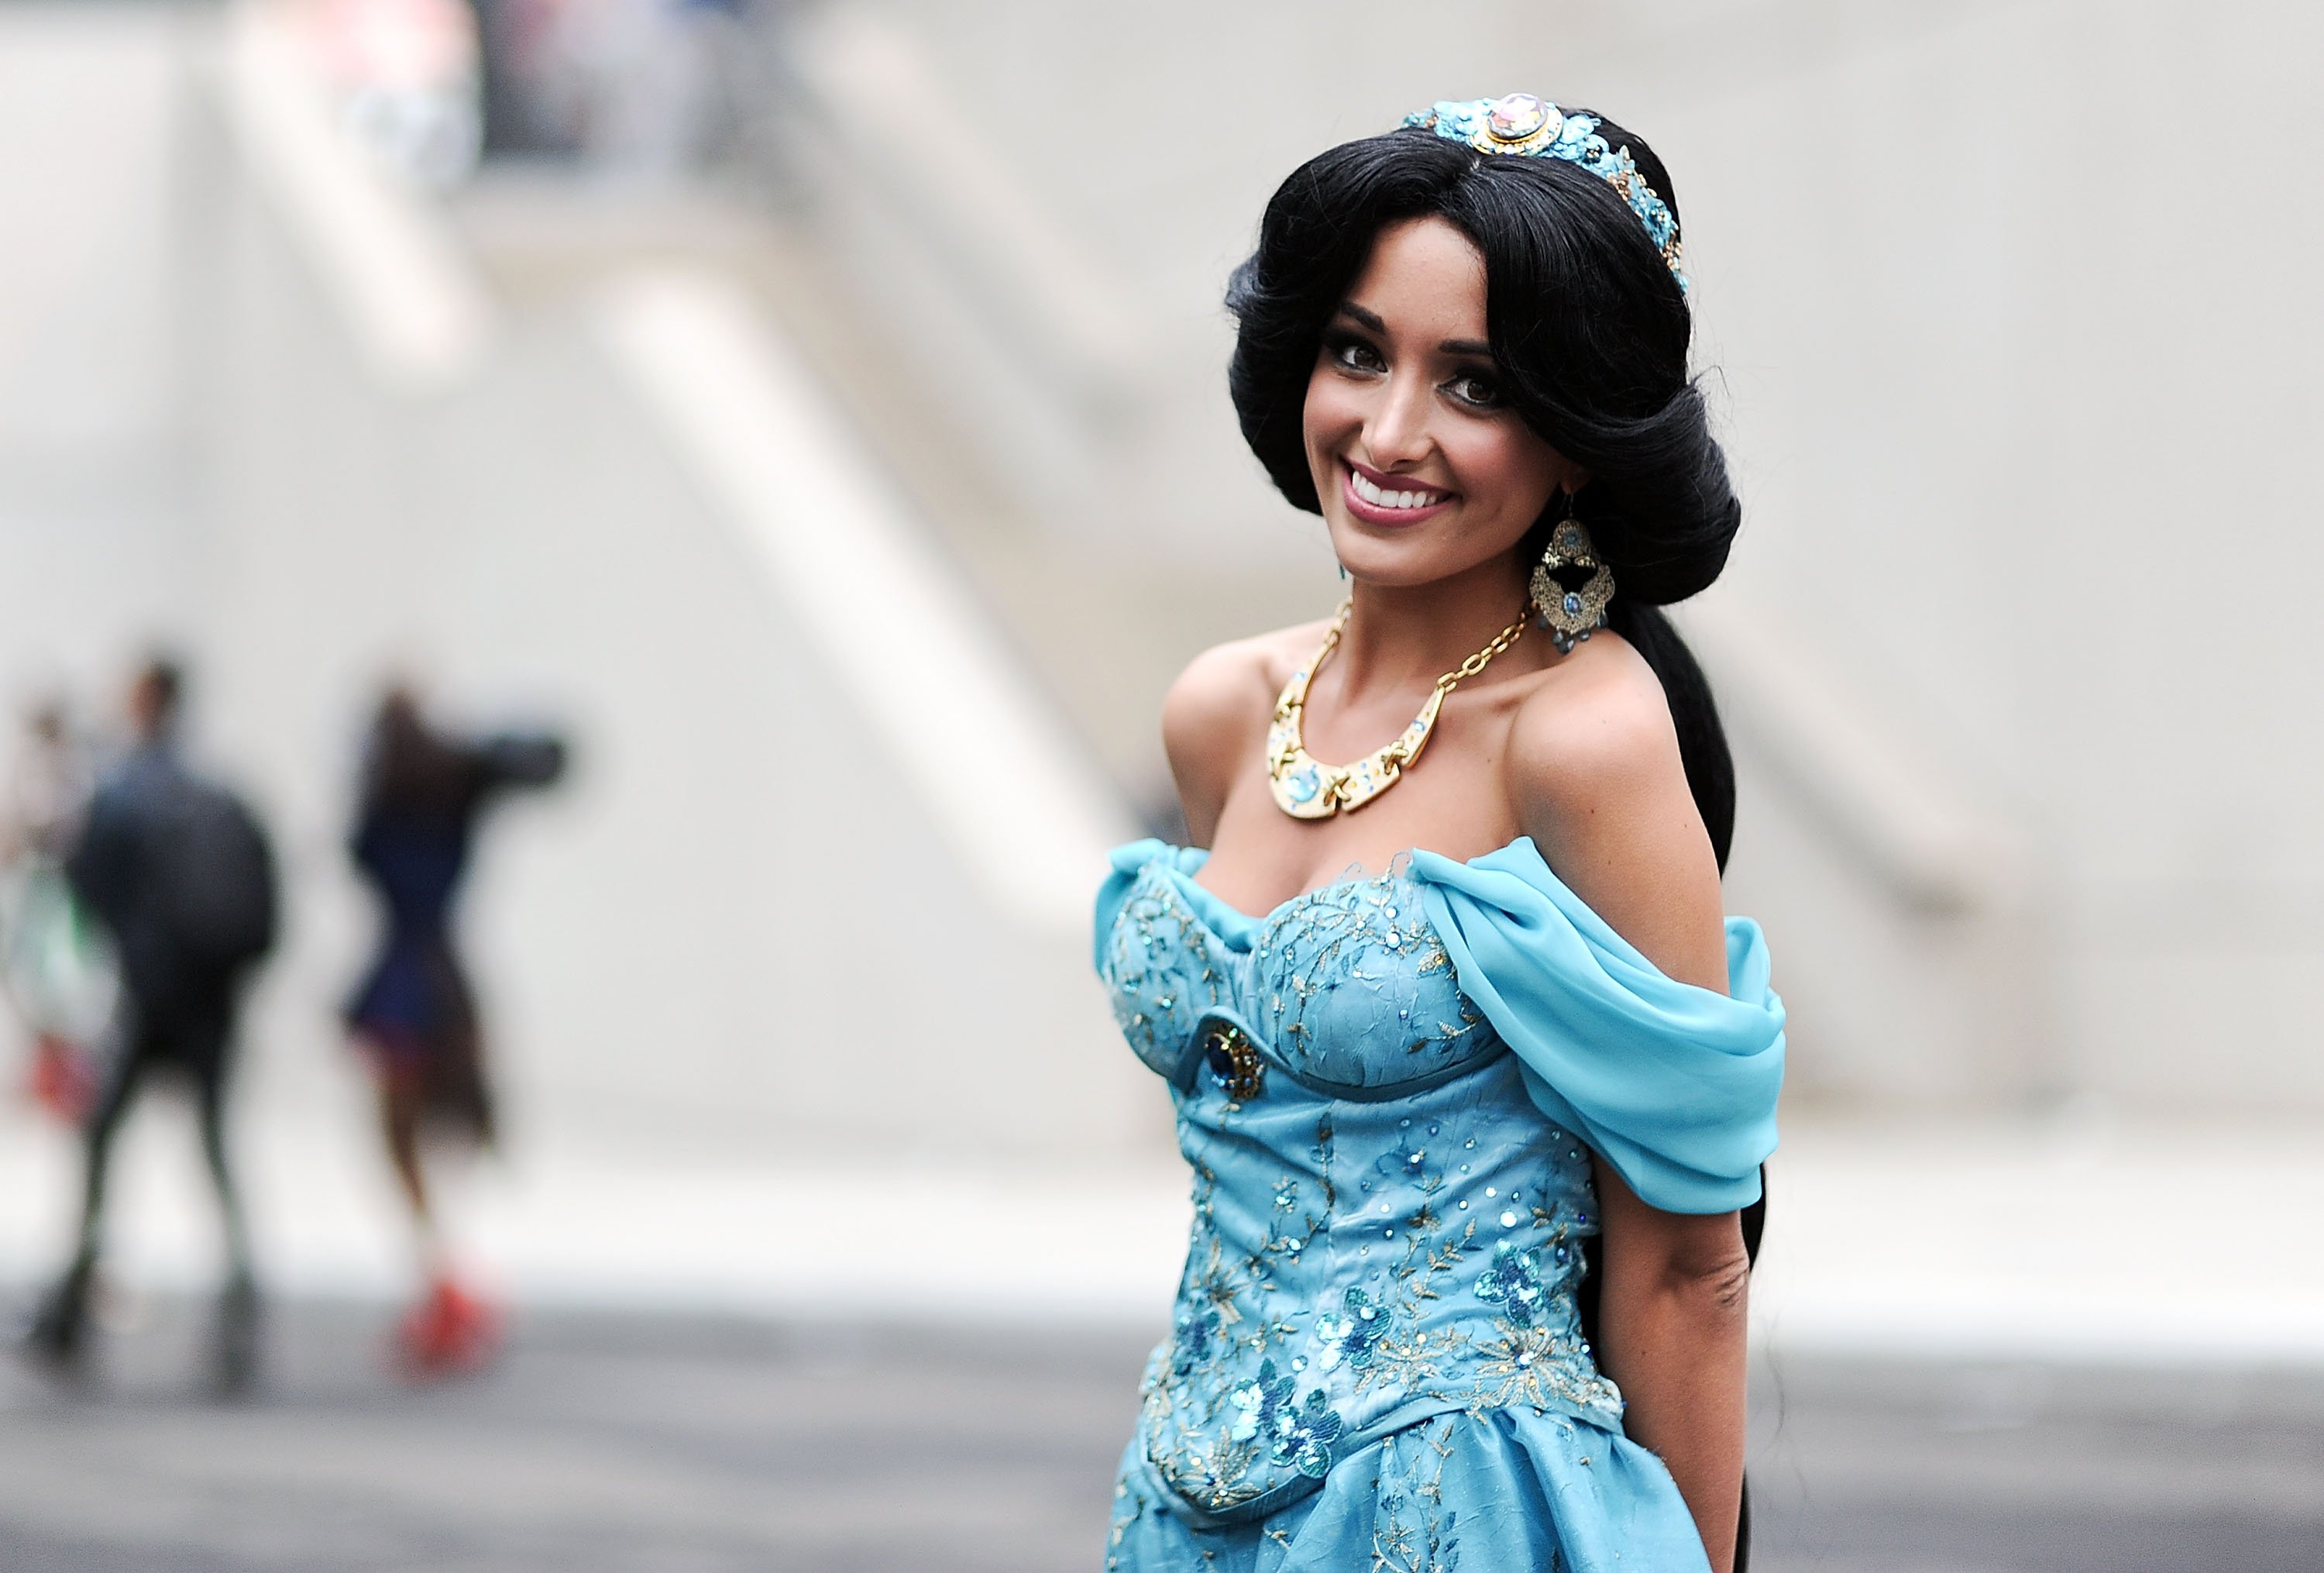 Someone dressed as Princess Jasmine